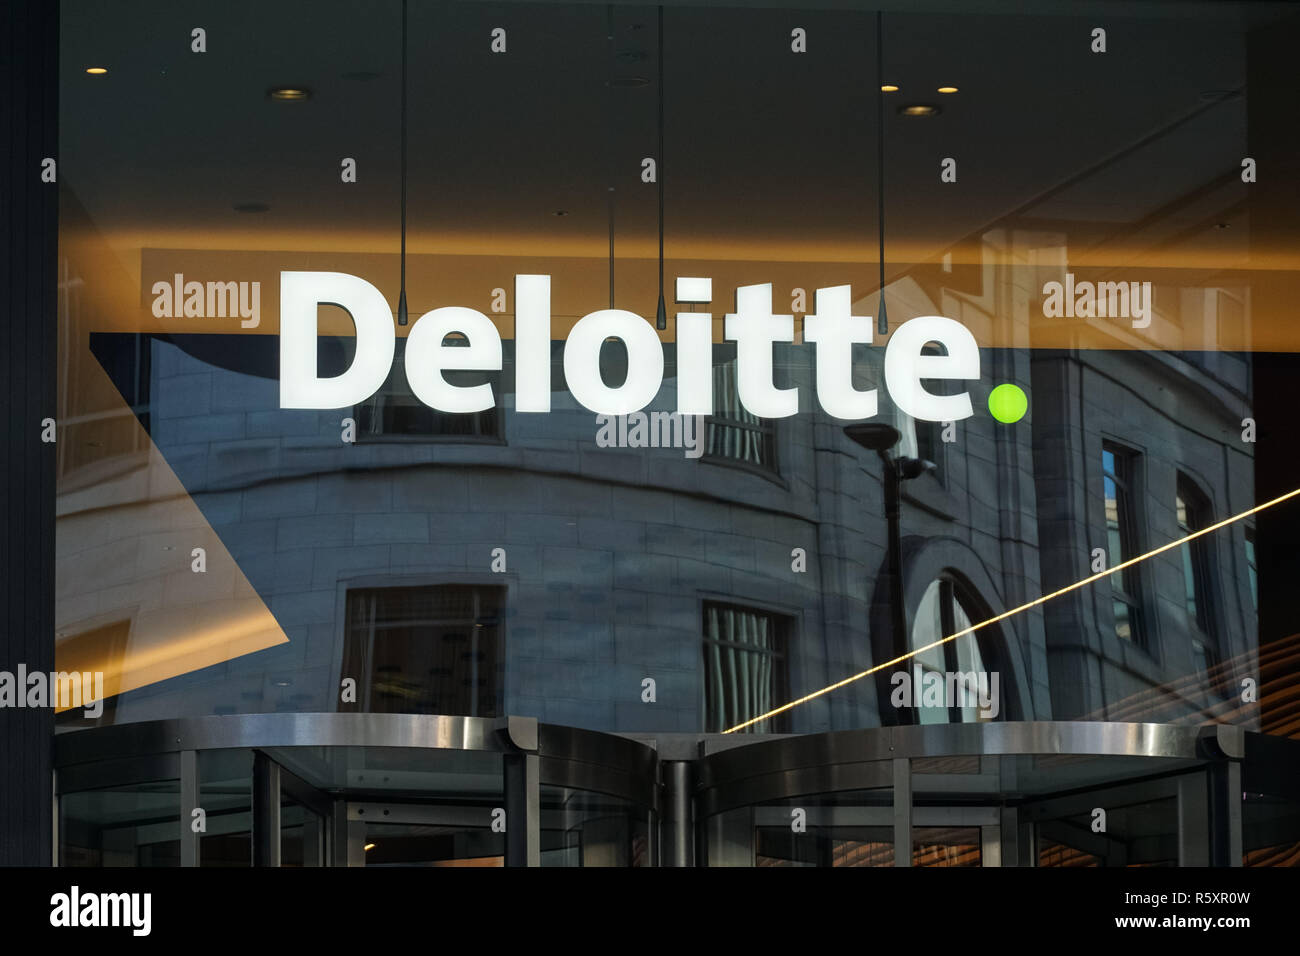 Deloitte Wallpaper